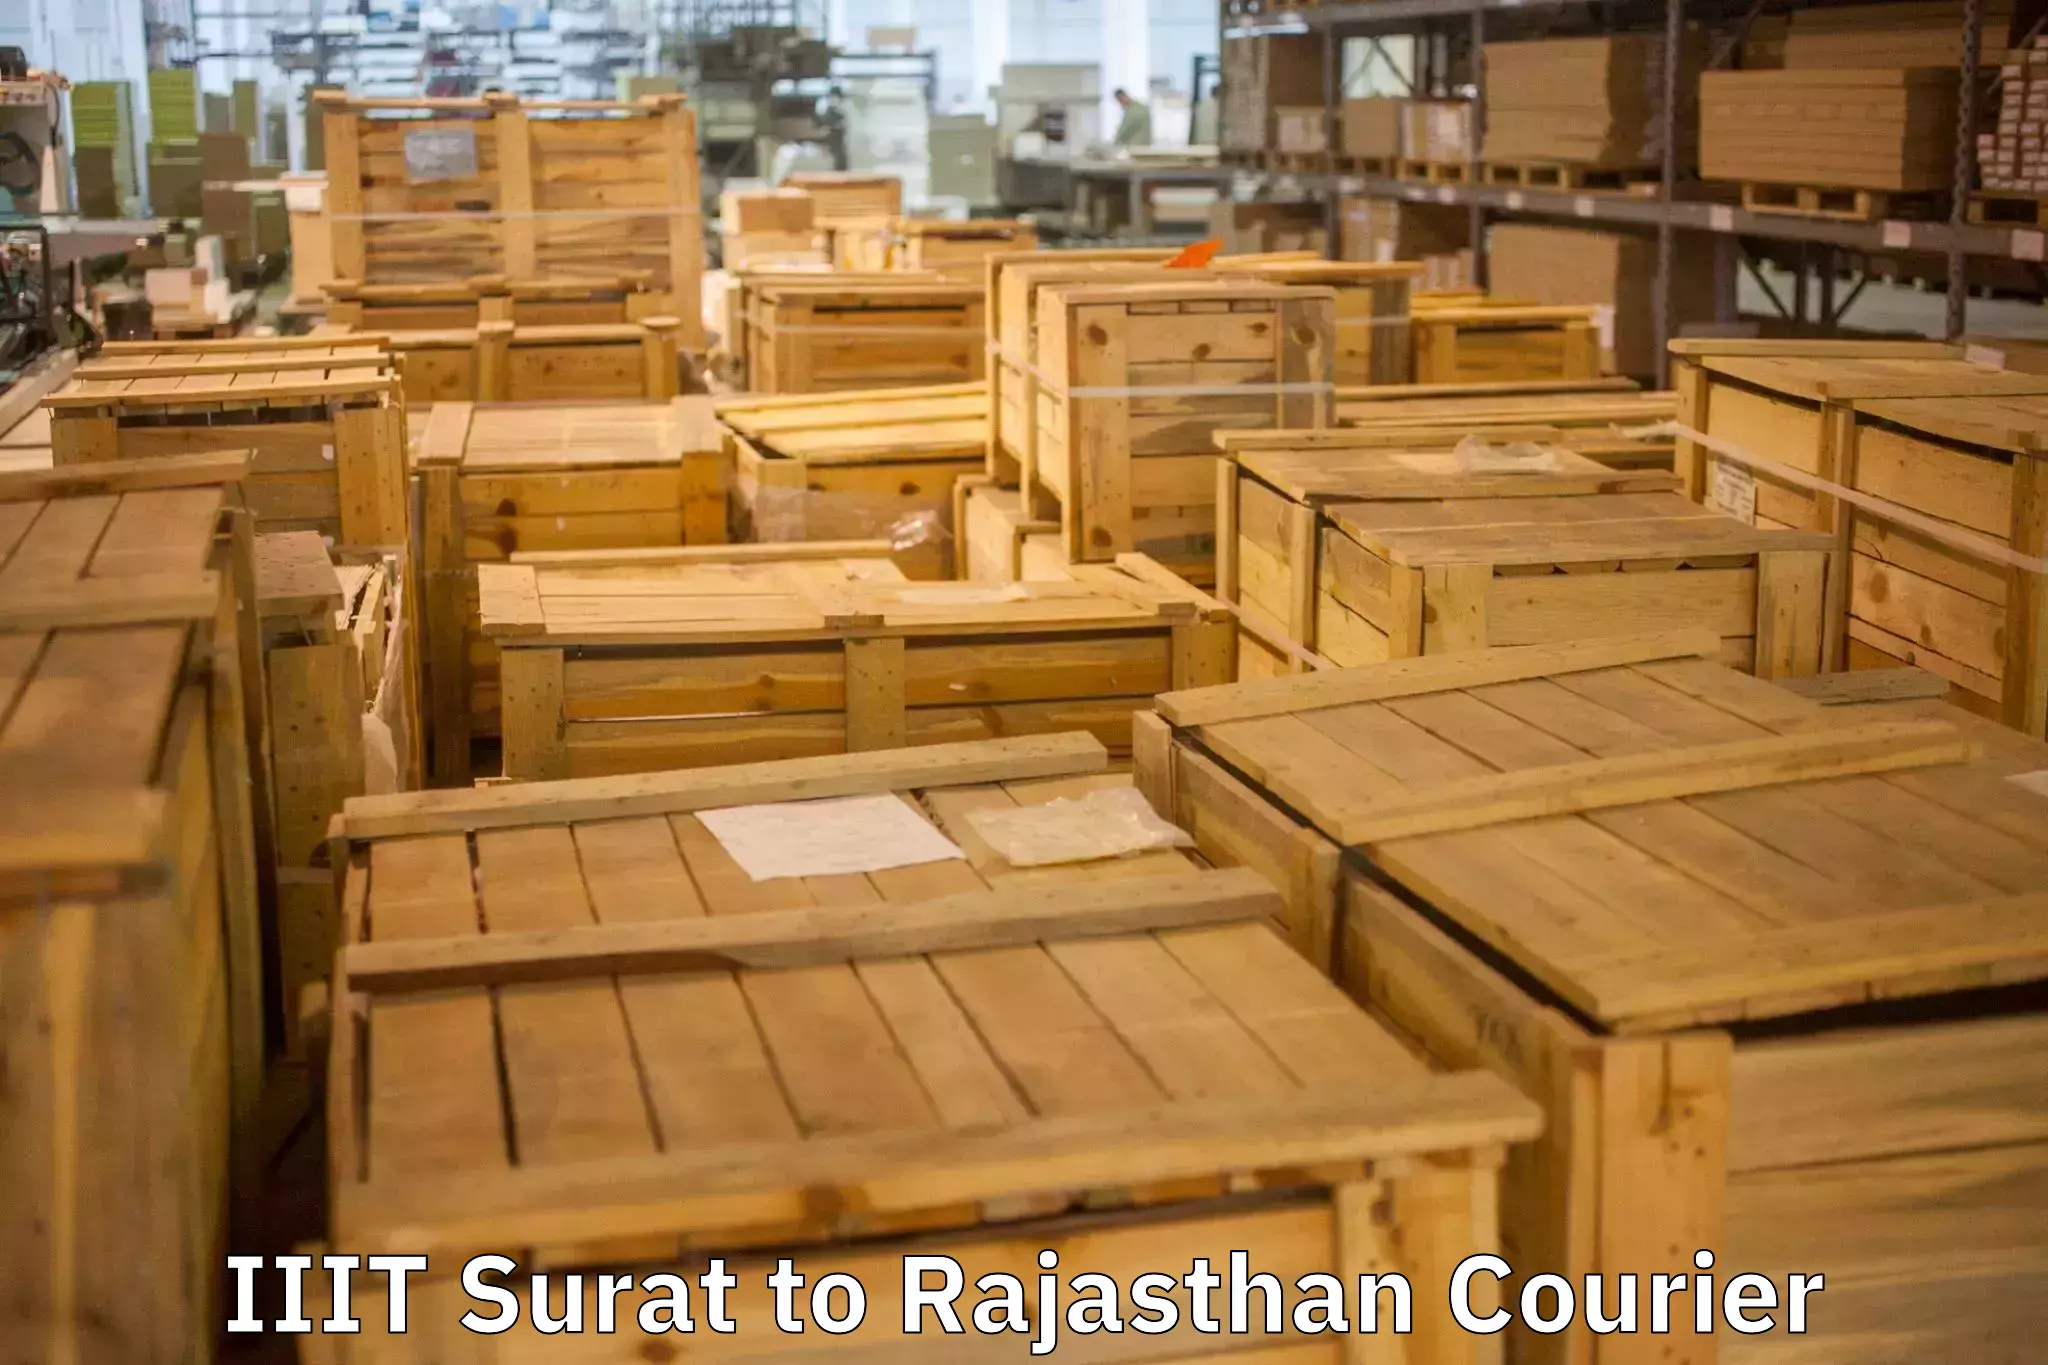 Furniture moving services IIIT Surat to Padampur Sri Ganganagar